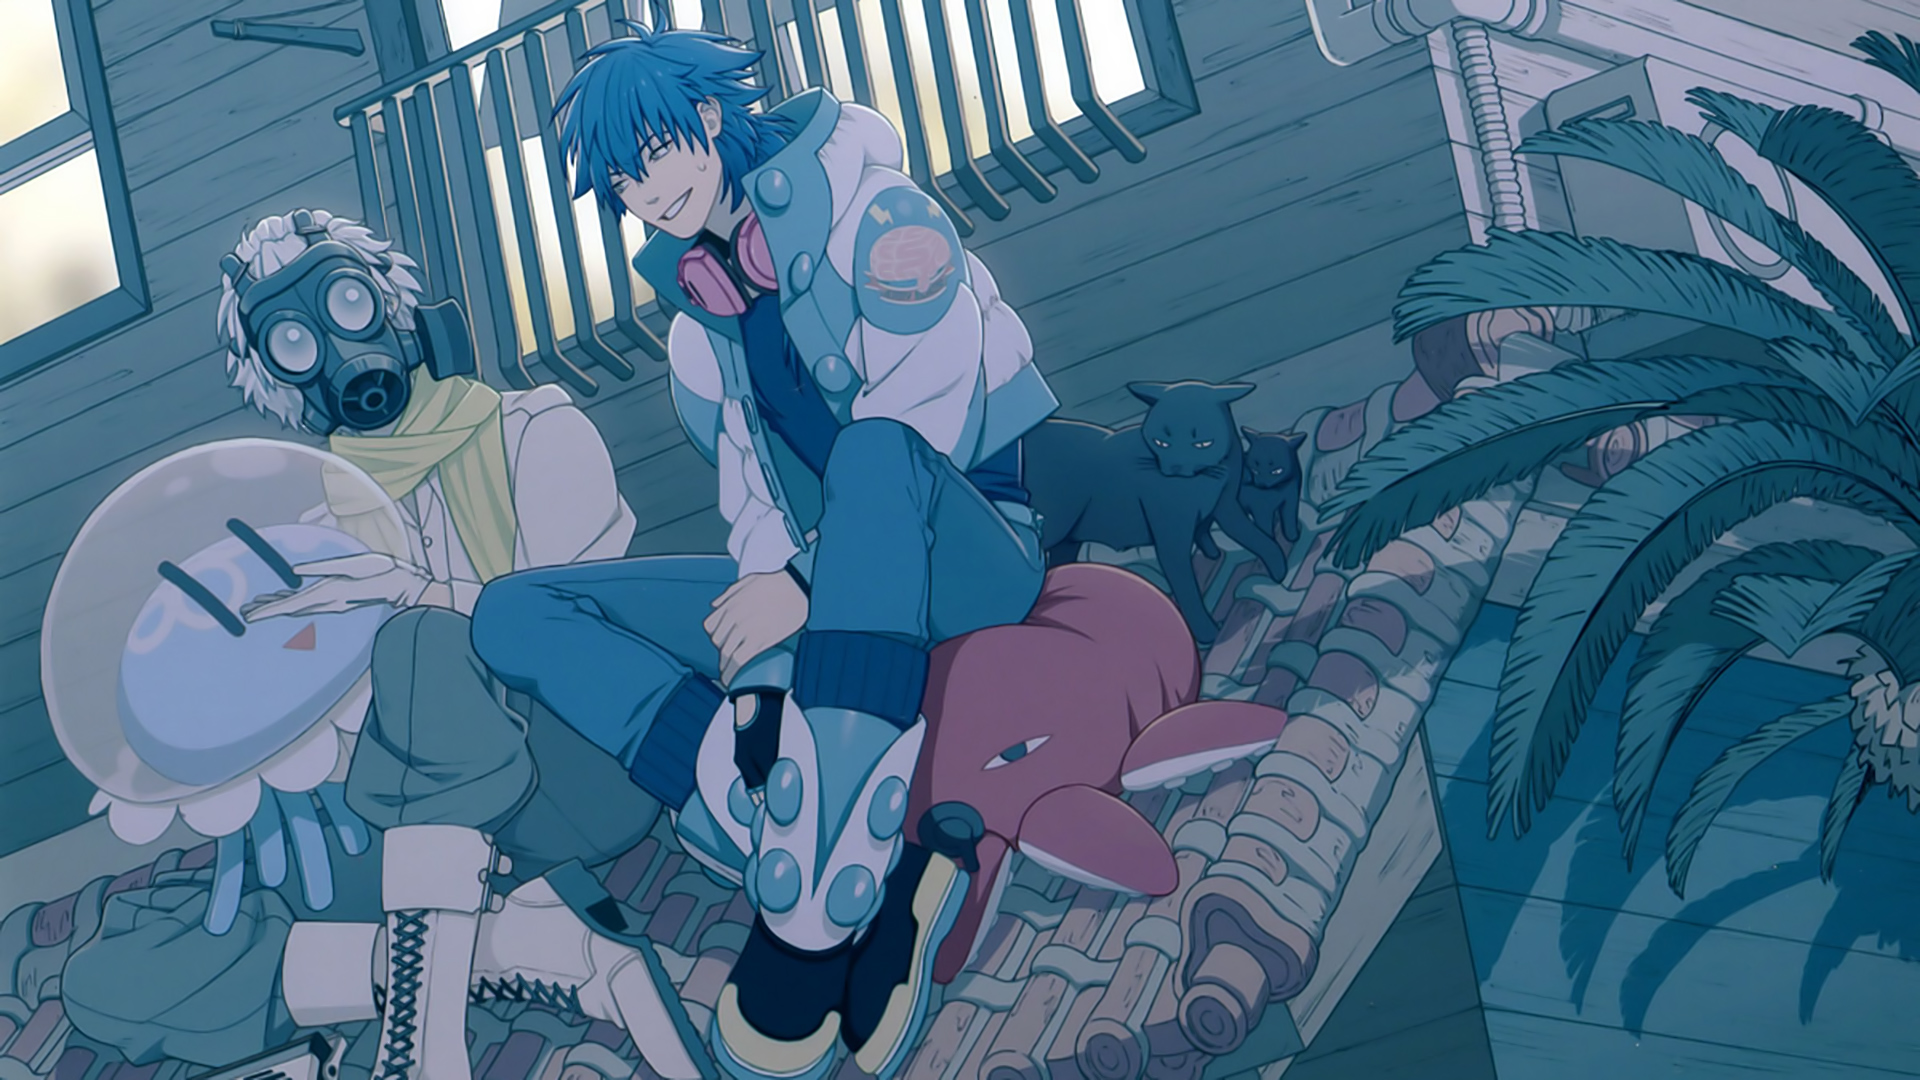 Anime 1920x1080 anime anime boys DRAMAtical Murder blue hair short hair rooftops cats